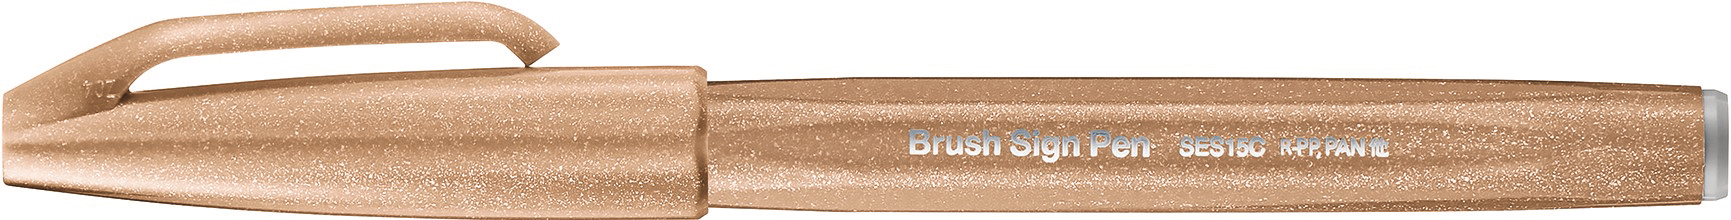 PENTEL Brush Sign Pen SES15C-E2 brun noyer